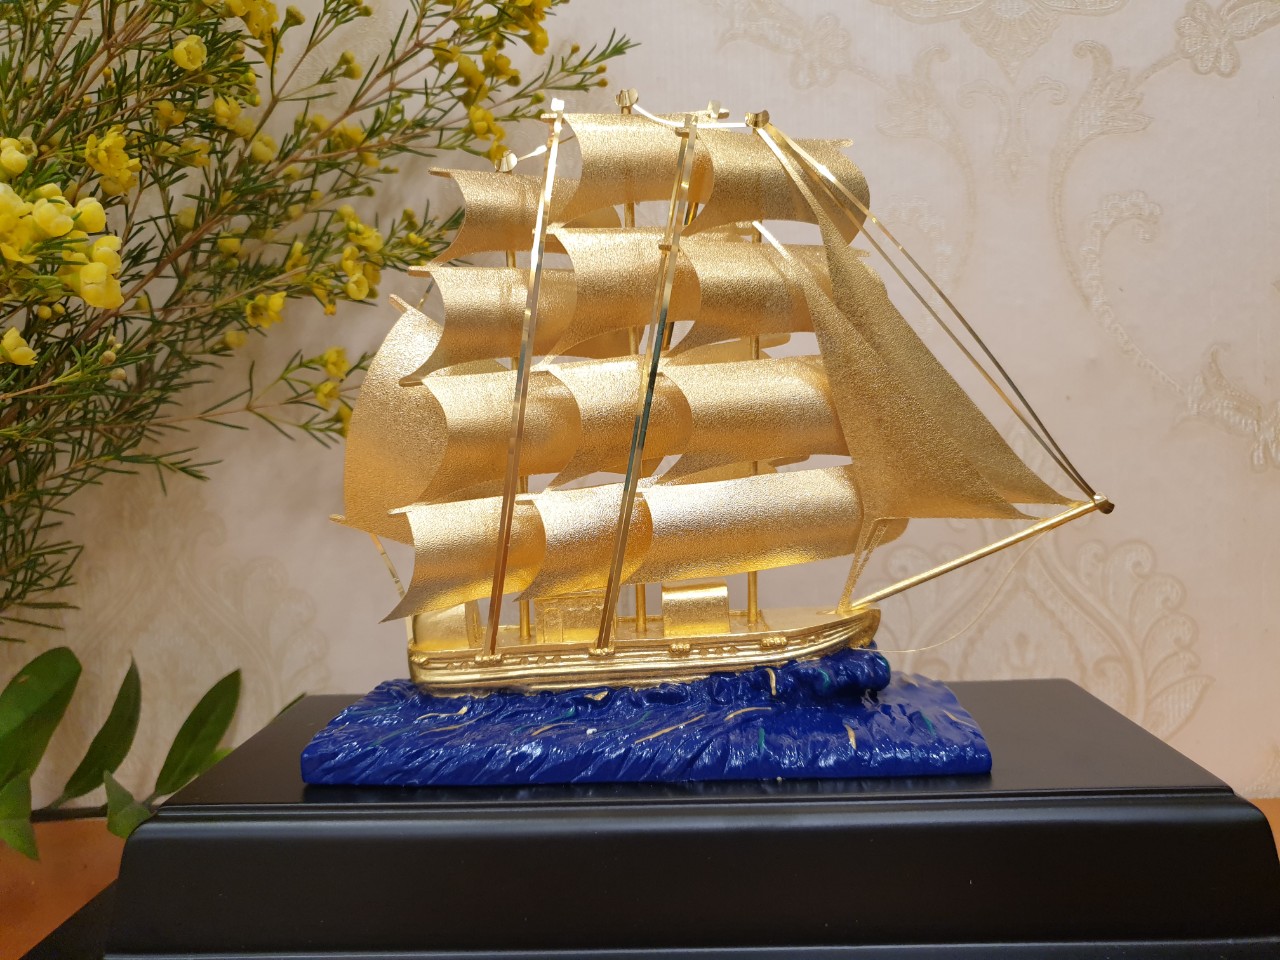 Mô hình thuyền dát vàng 24k MT Gold Art(29x17x34 cm) M01- Hàng chính hãng, quà tặng dành cho sếp, khách hàng, đối tác